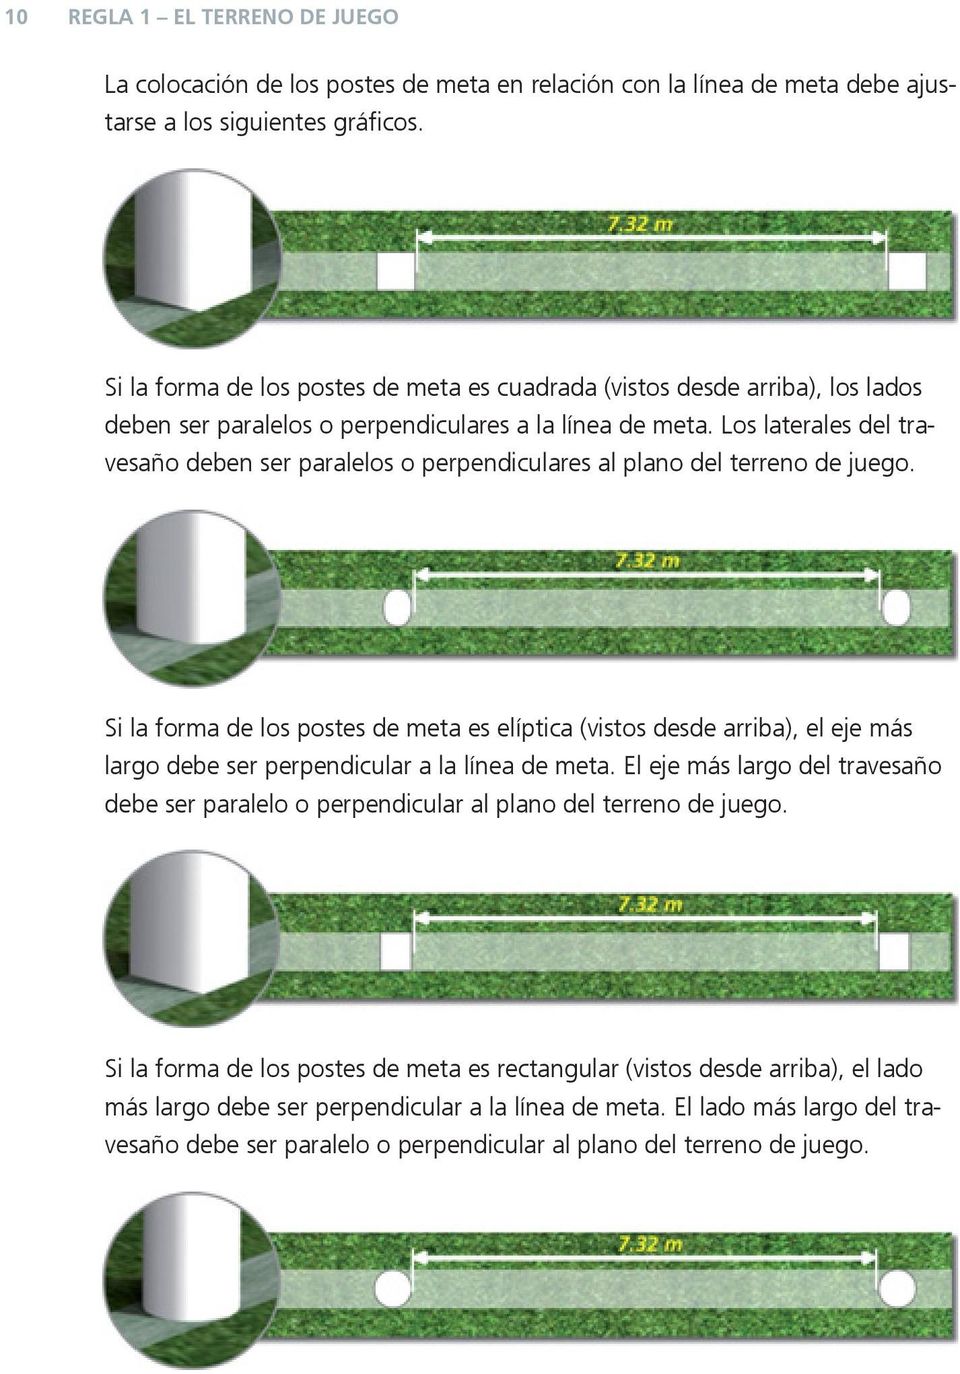 Los laterales del travesaño deben ser paralelos o perpendiculares al plano del terreno de juego.